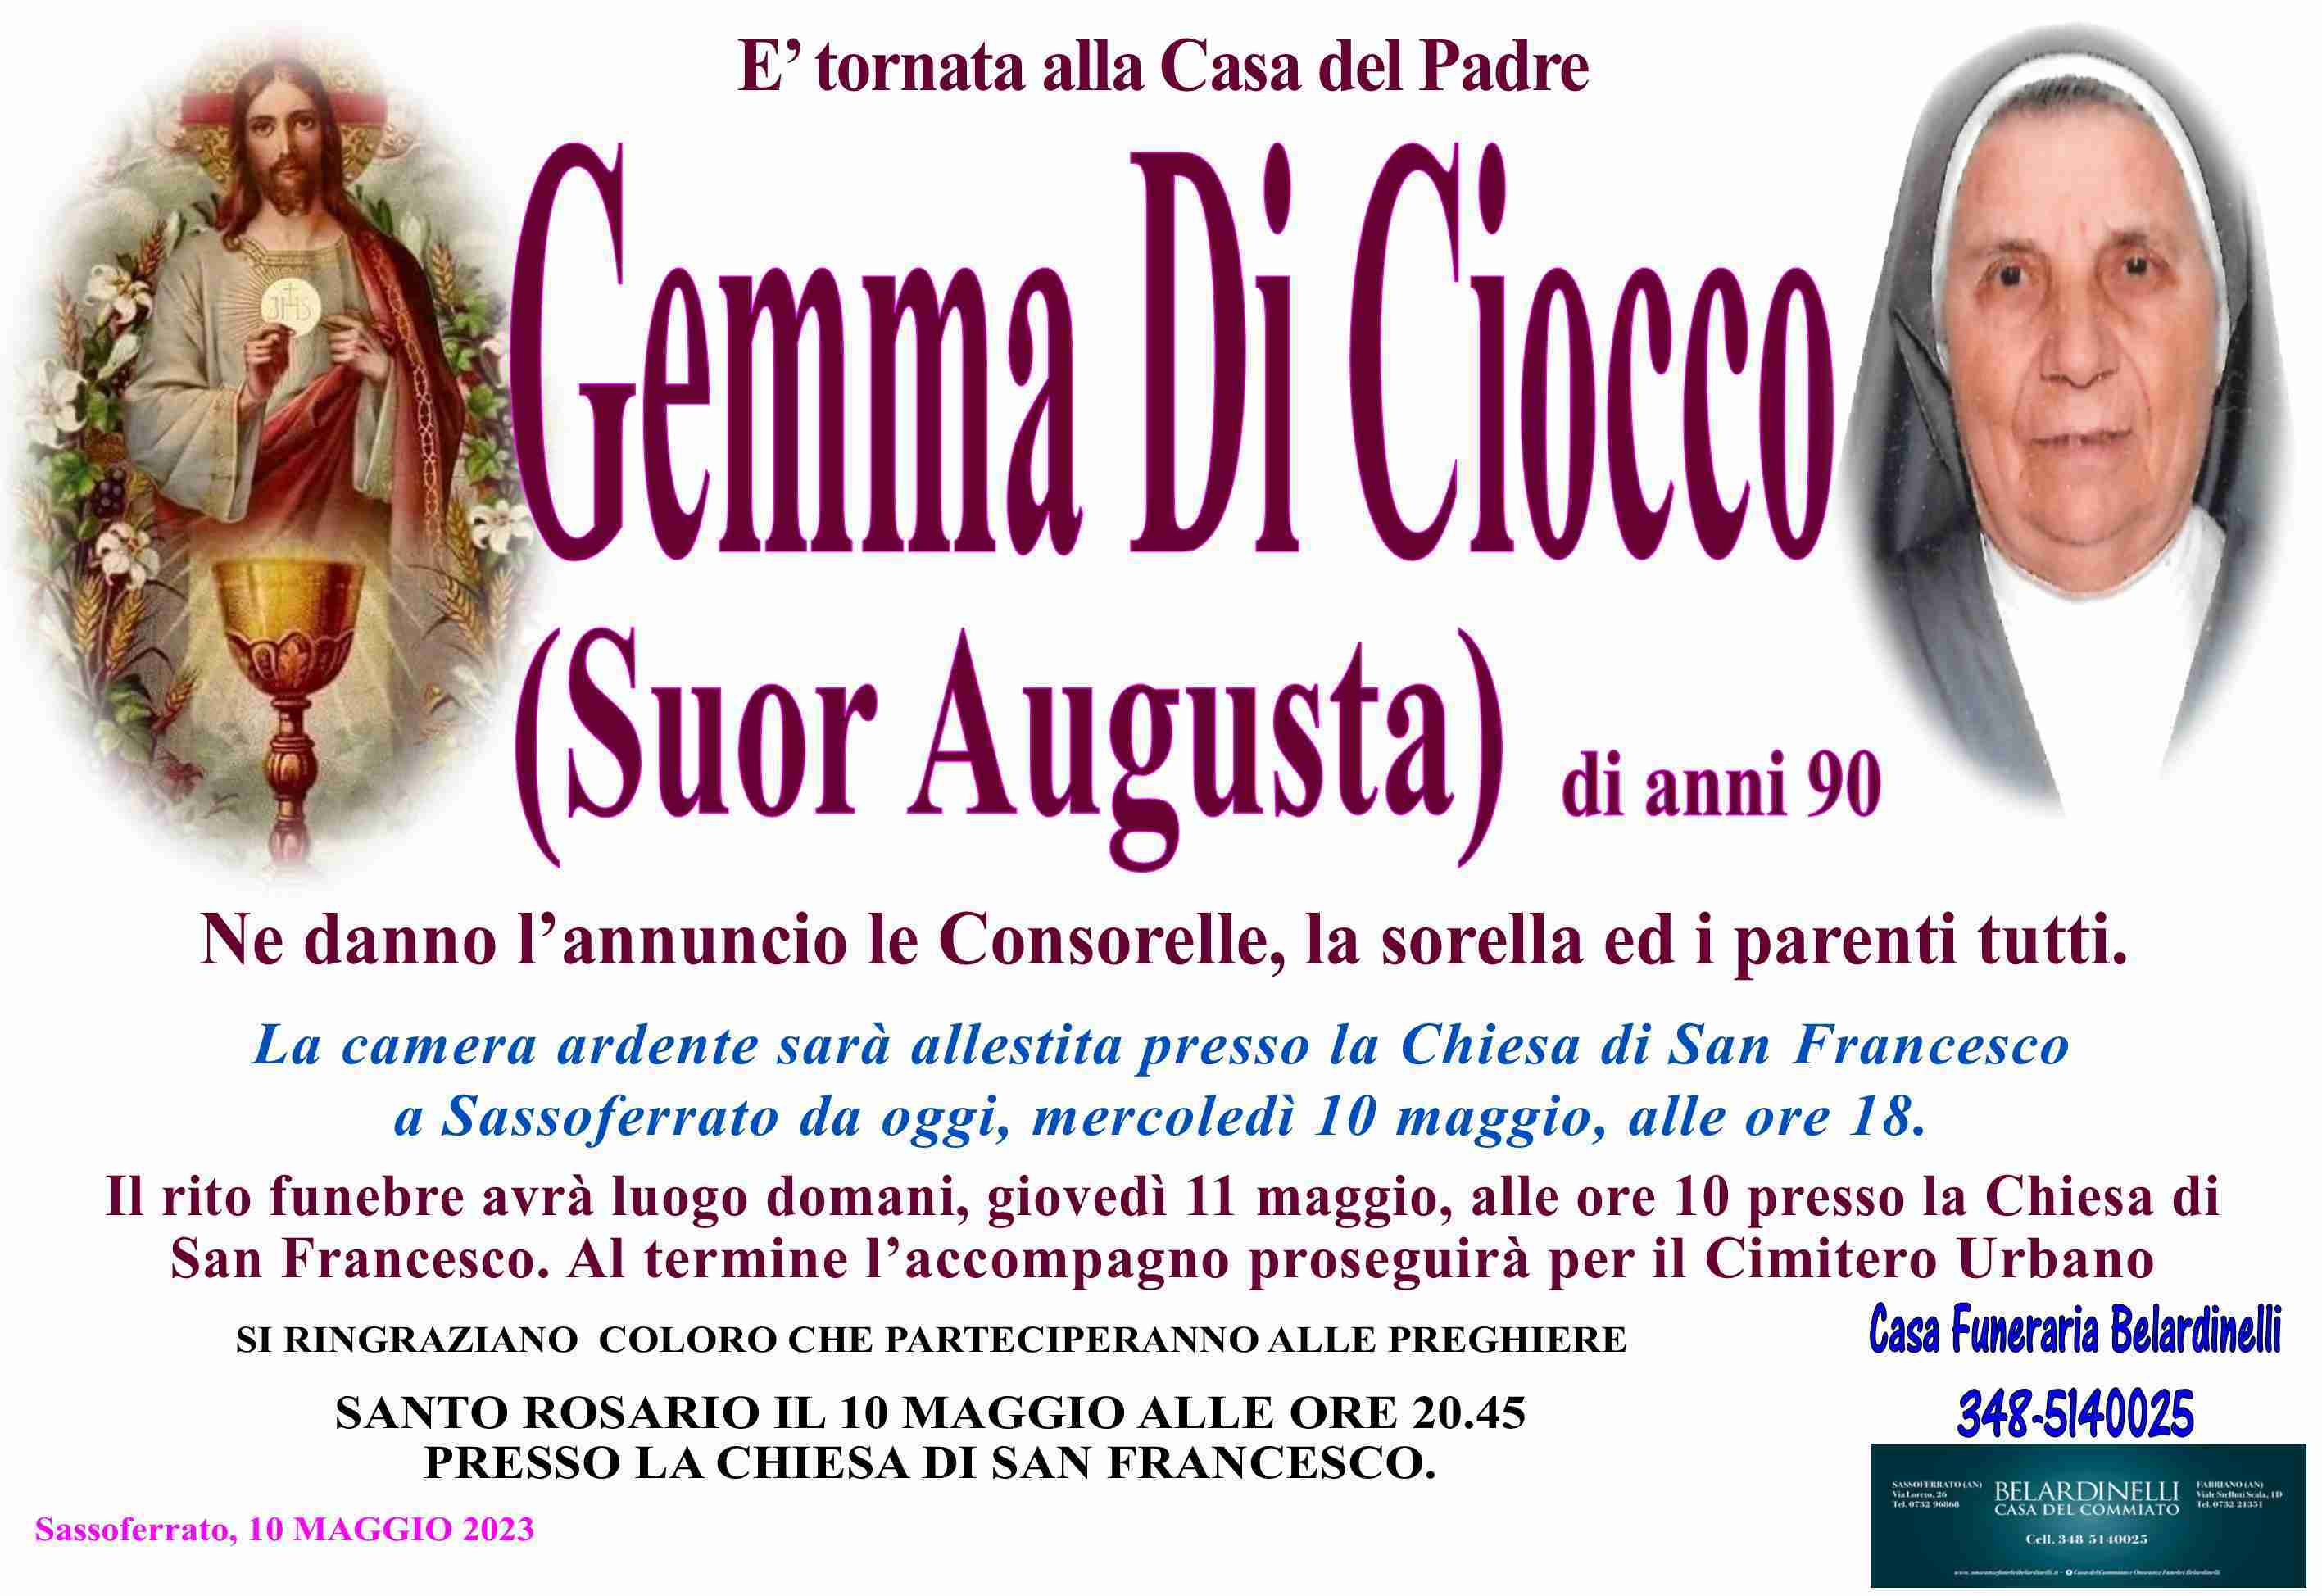 Gemma Di Ciocco (Suor Augusta)